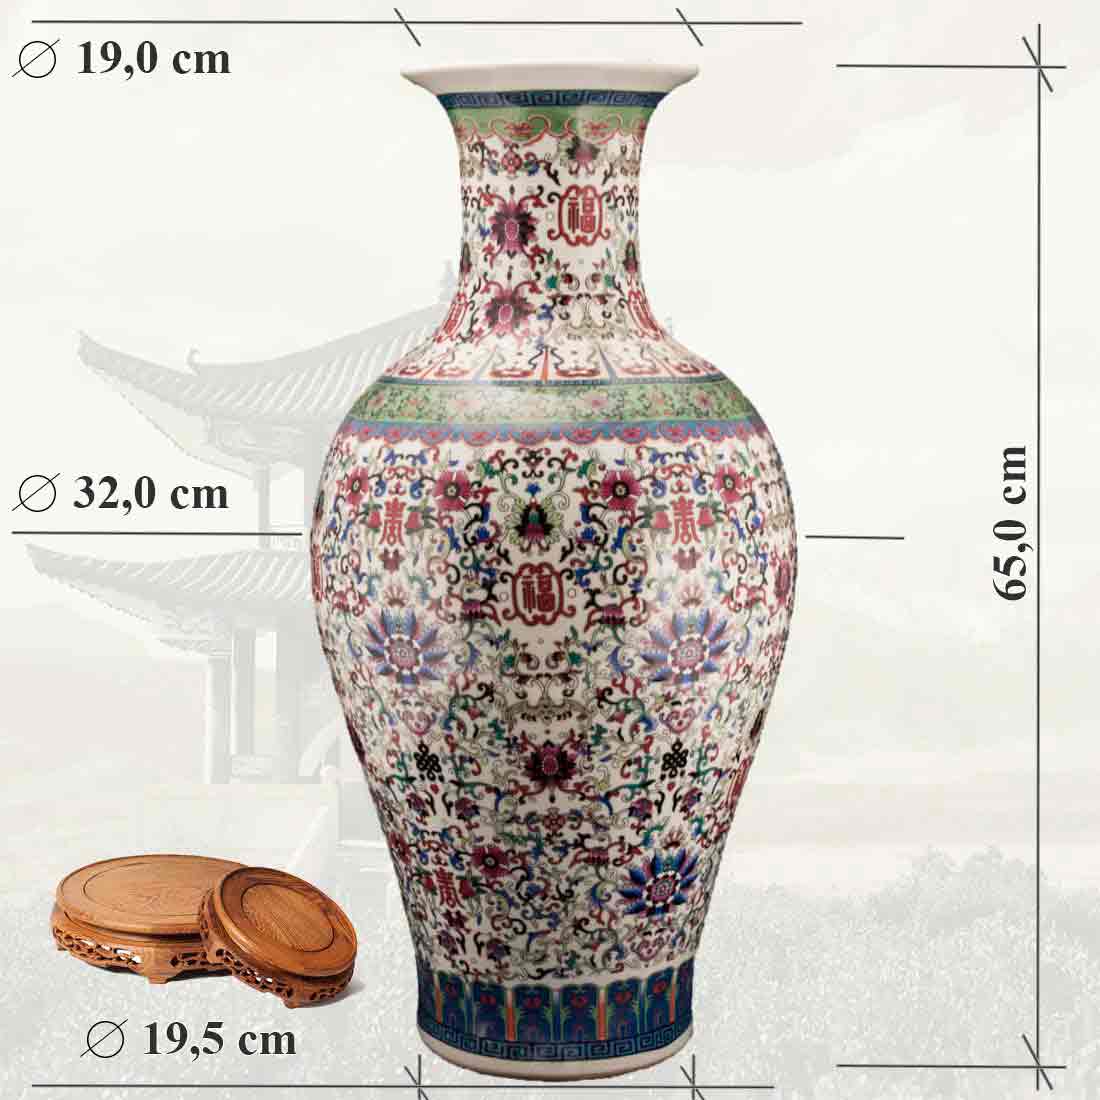 Китайская ваза, "Цветки талисмана" [吉祥] в интернет-студии декора / шоурум | ChinaHouse.studio